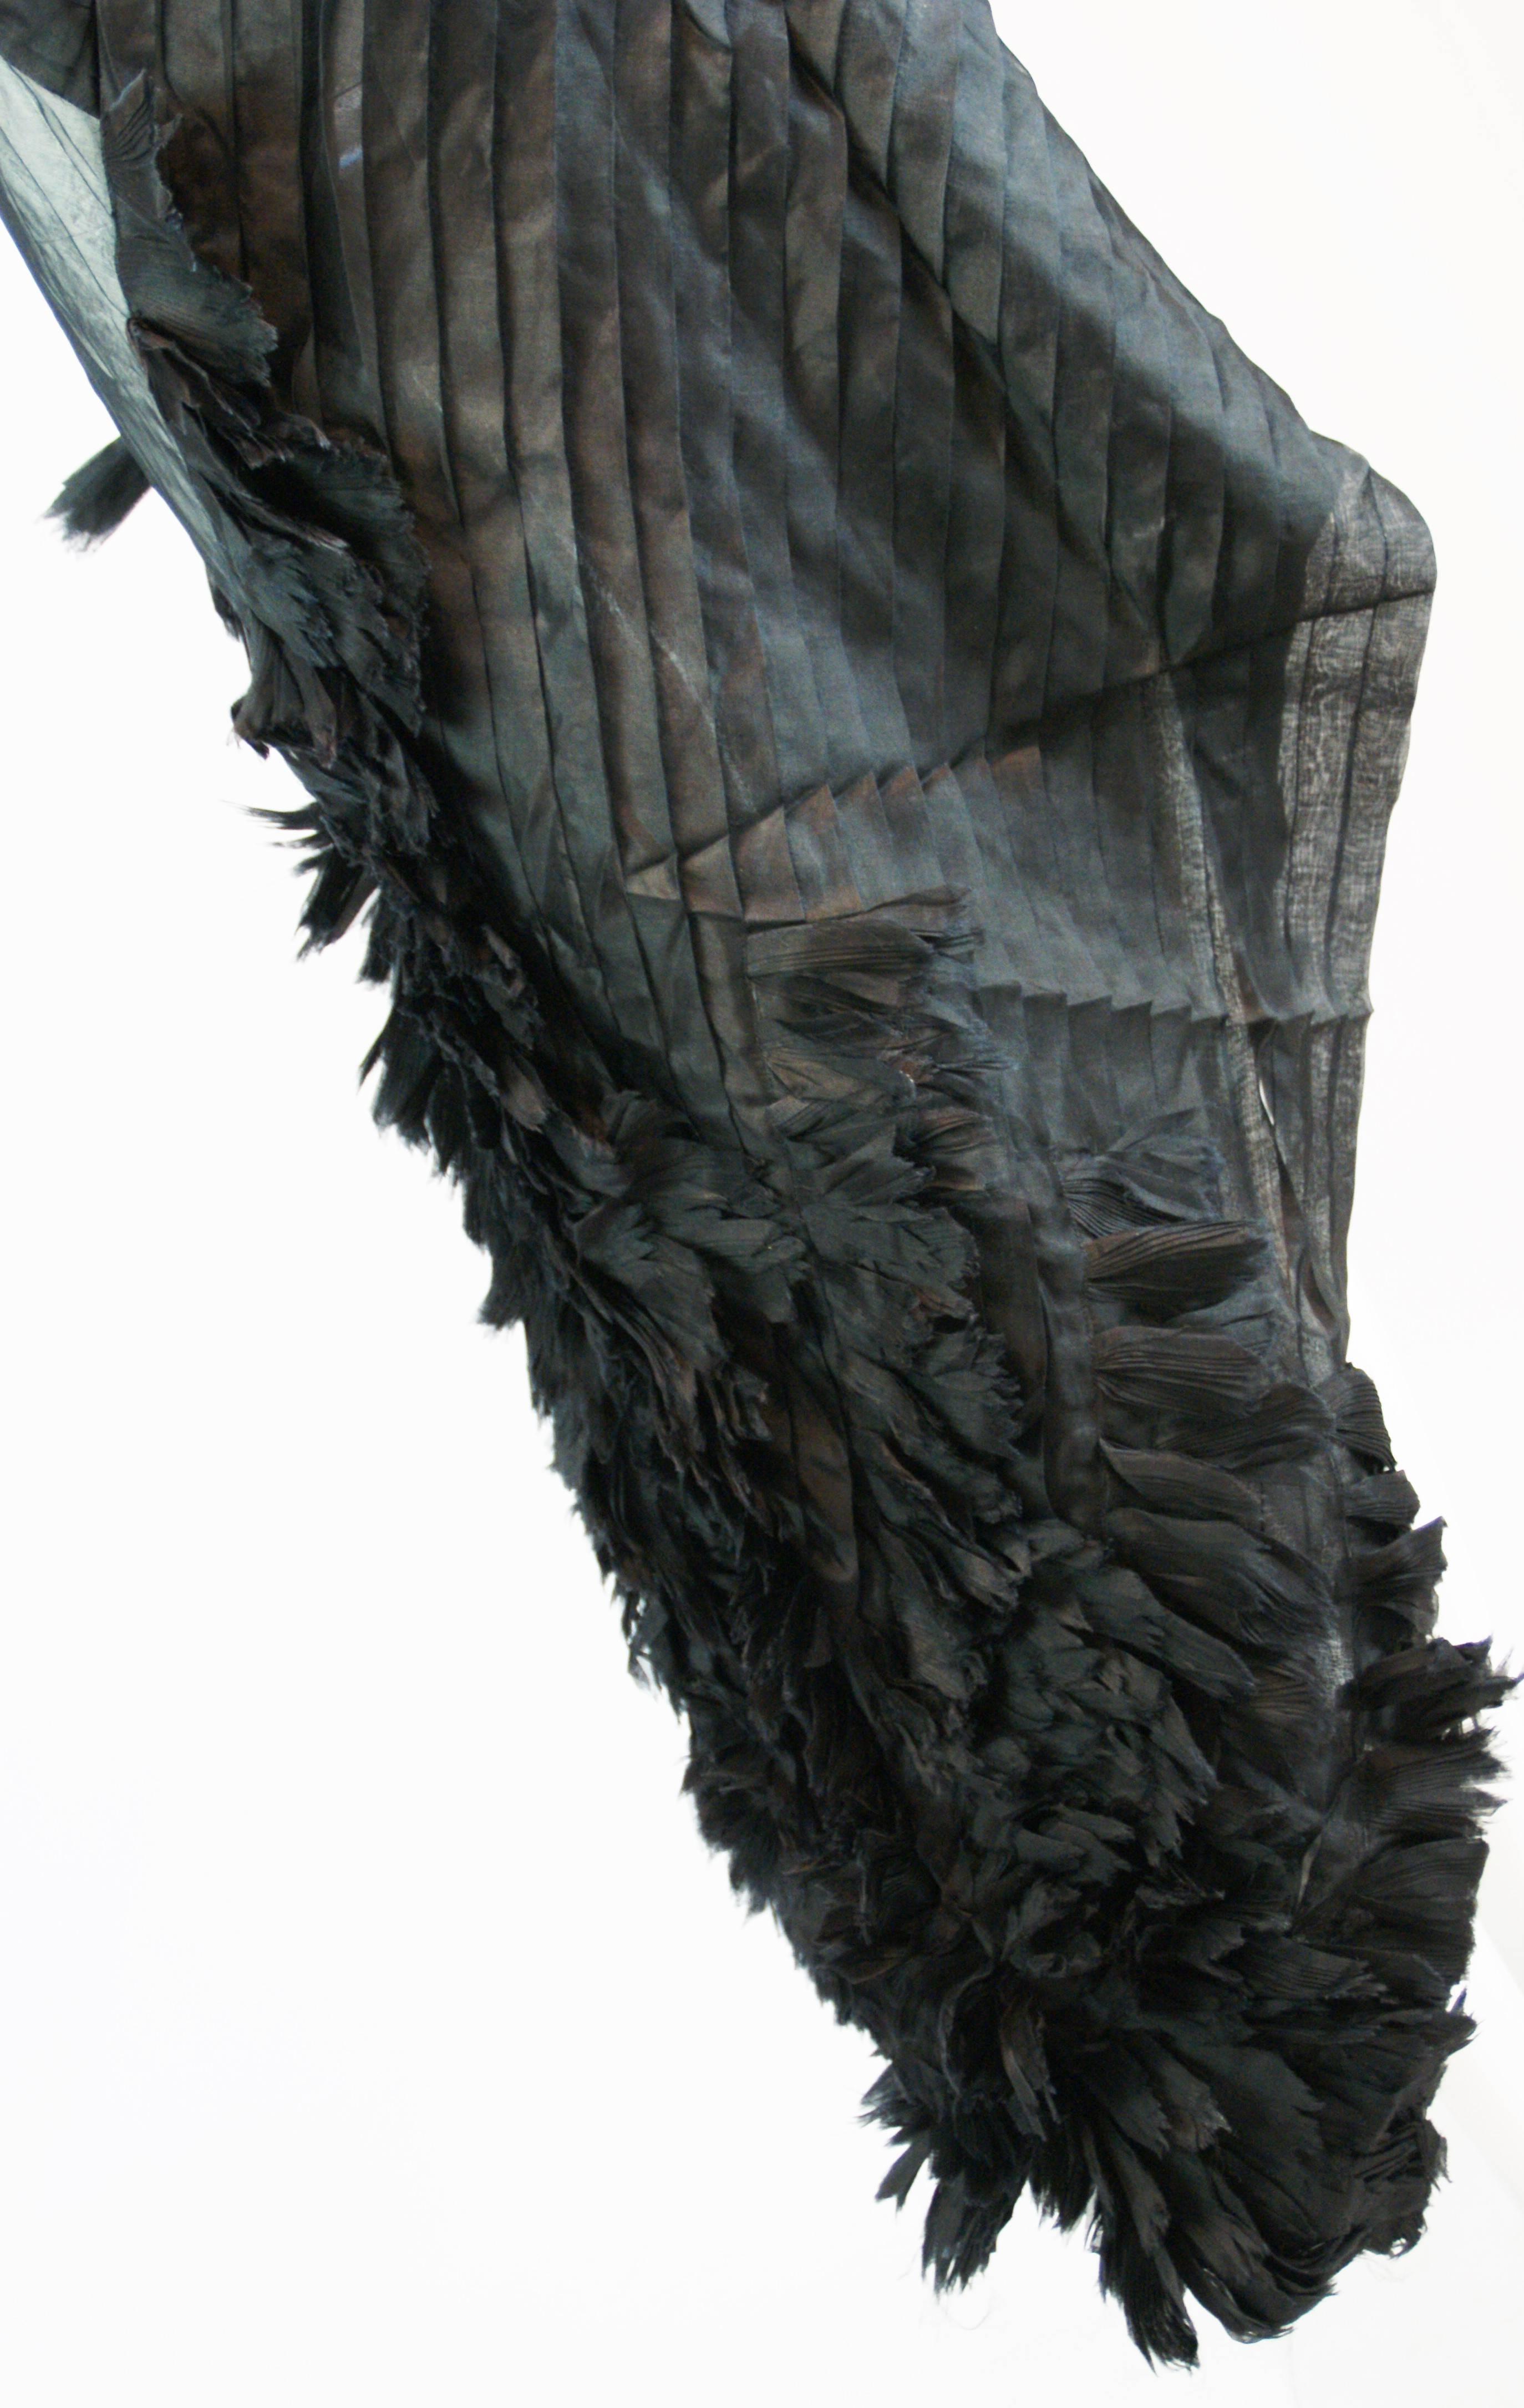 Black Alexander McQueen S/S 2001 'Voss' Runway Asymmetrical Gown Dress